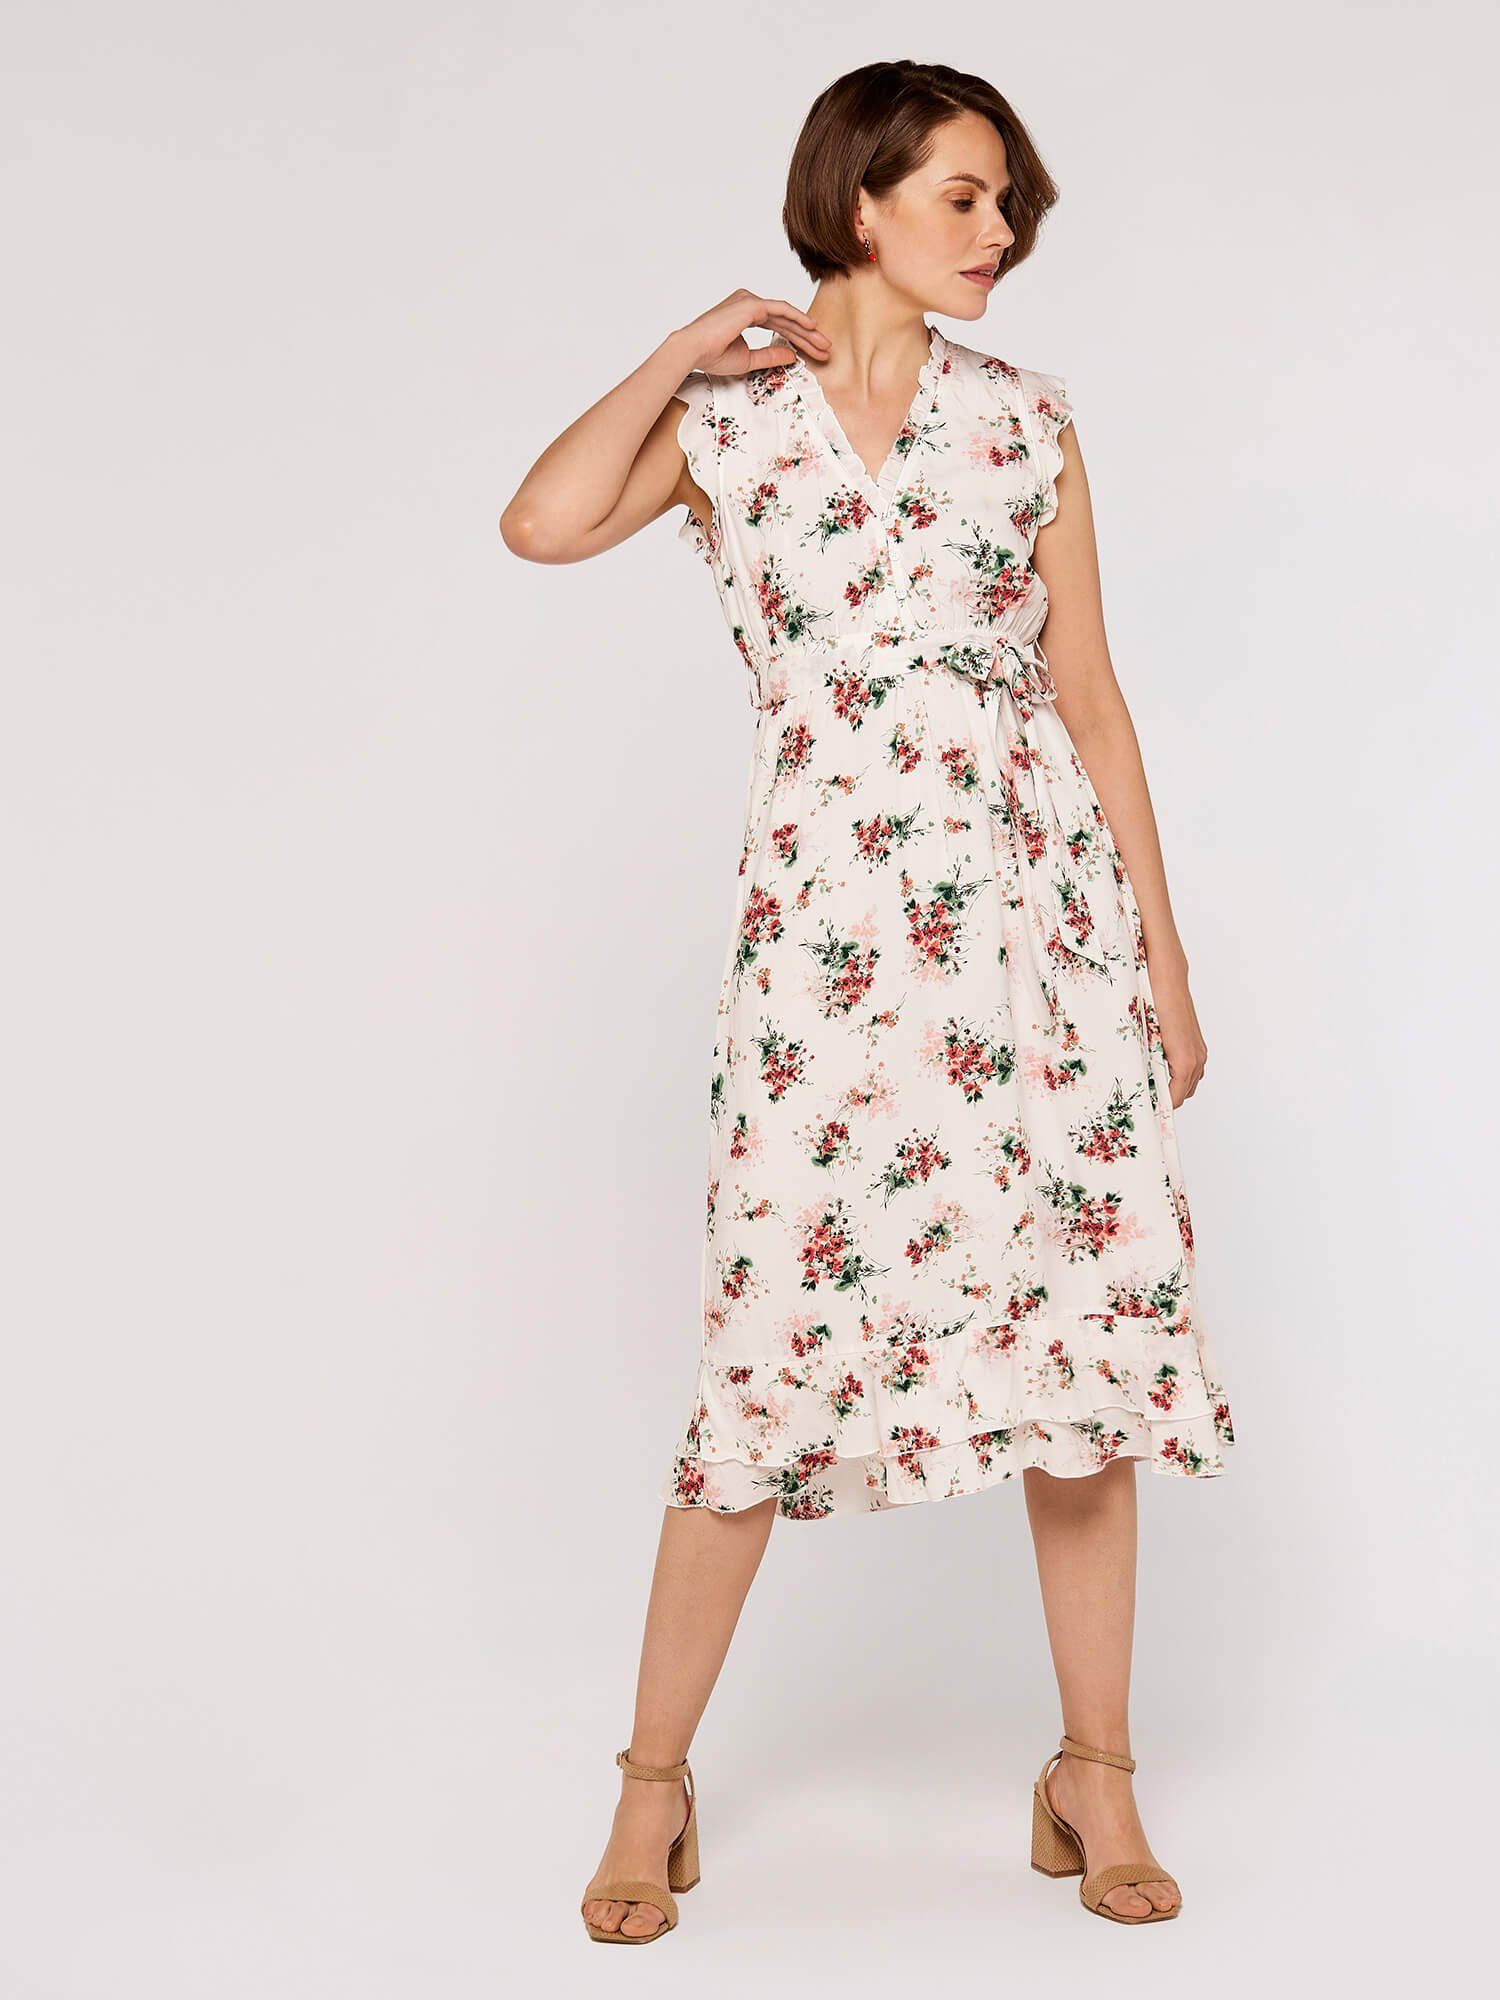 Apricot Midikleid Ditsy Floral Print Dress, mit Rüschen, mit Bindegürtel